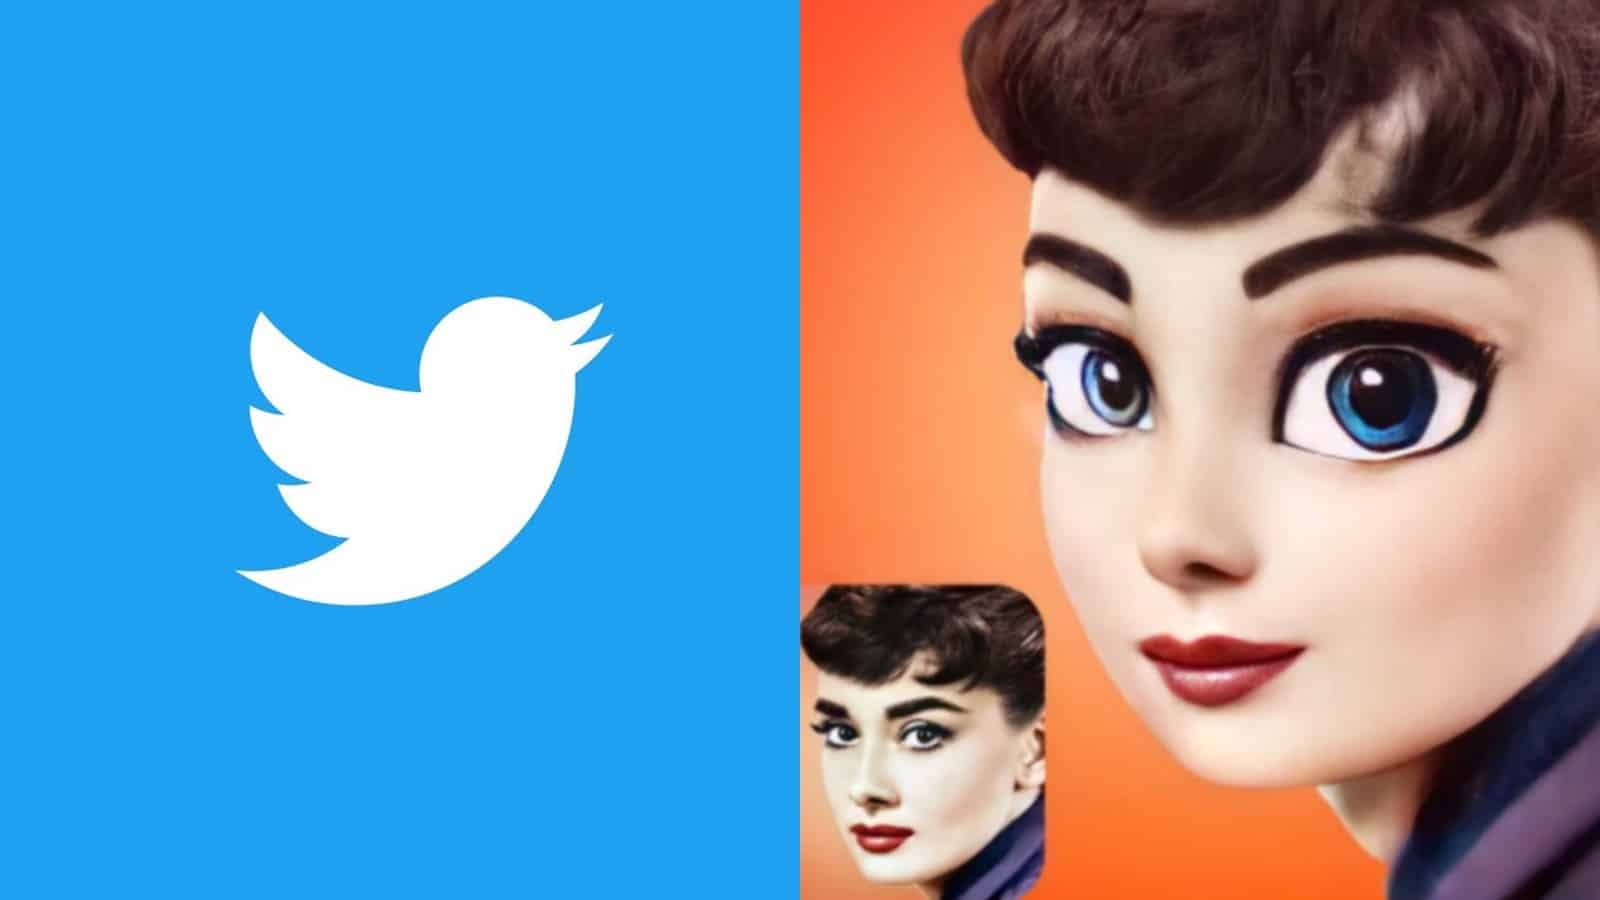 Twitter logo next to a cartoon face